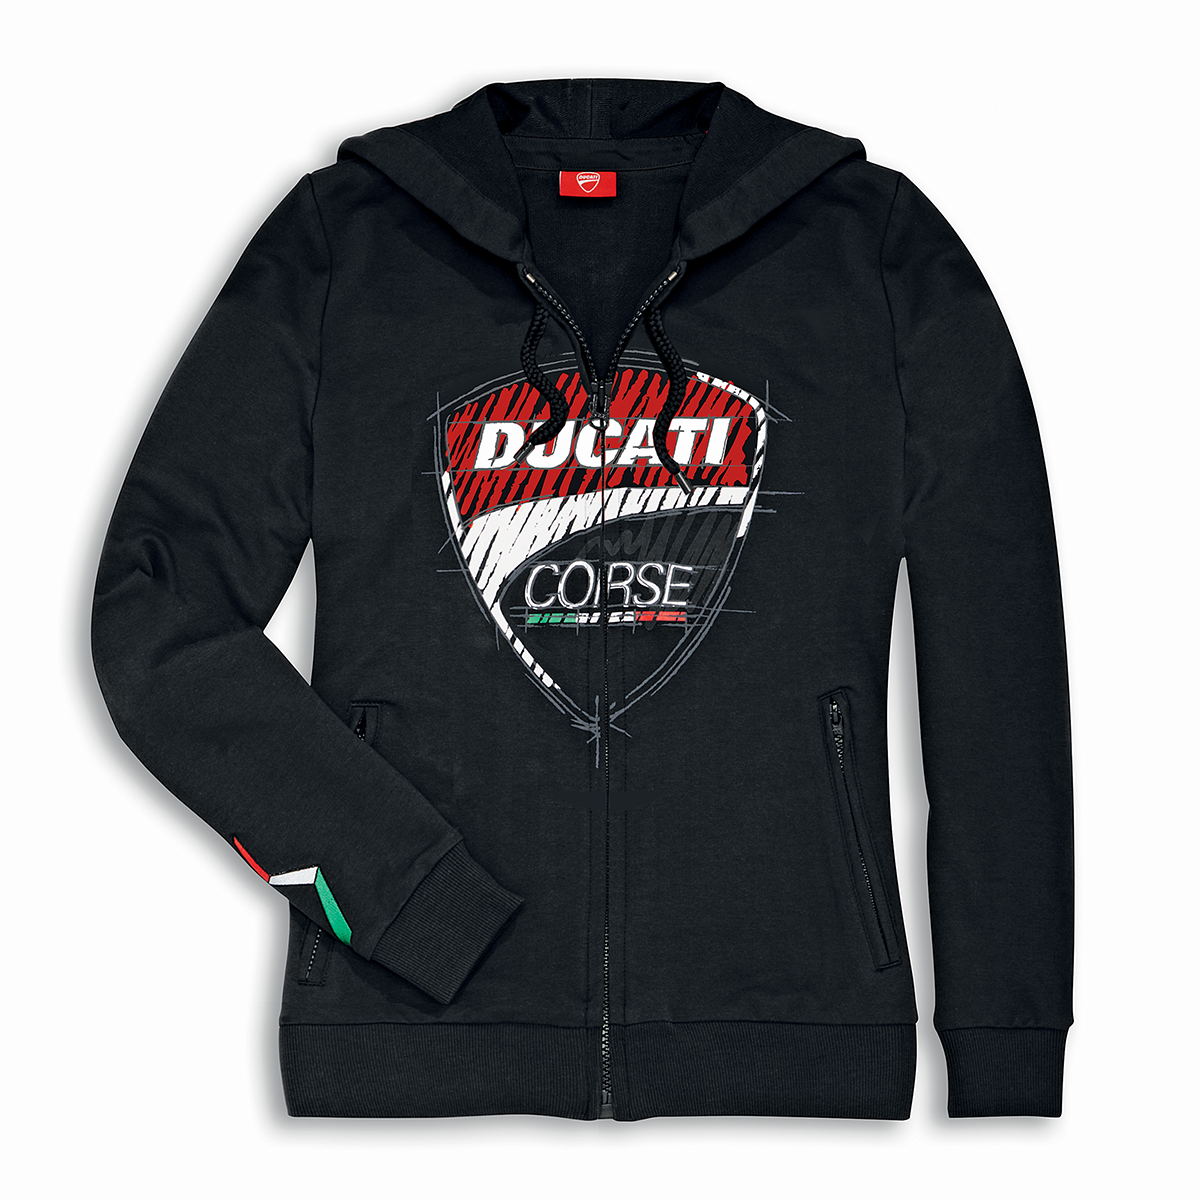 Ducati Corse Sketch Women's Hooded Sweatshirt